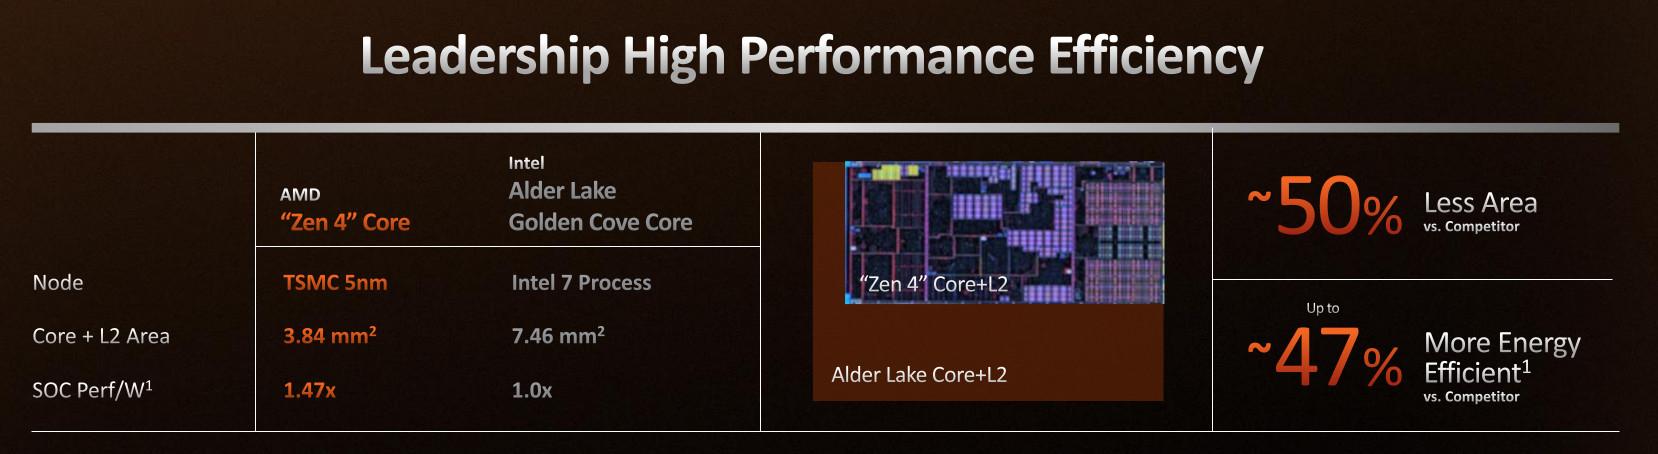 Petit die mais performances convenables : le Sweet Spot habituel d'AMD